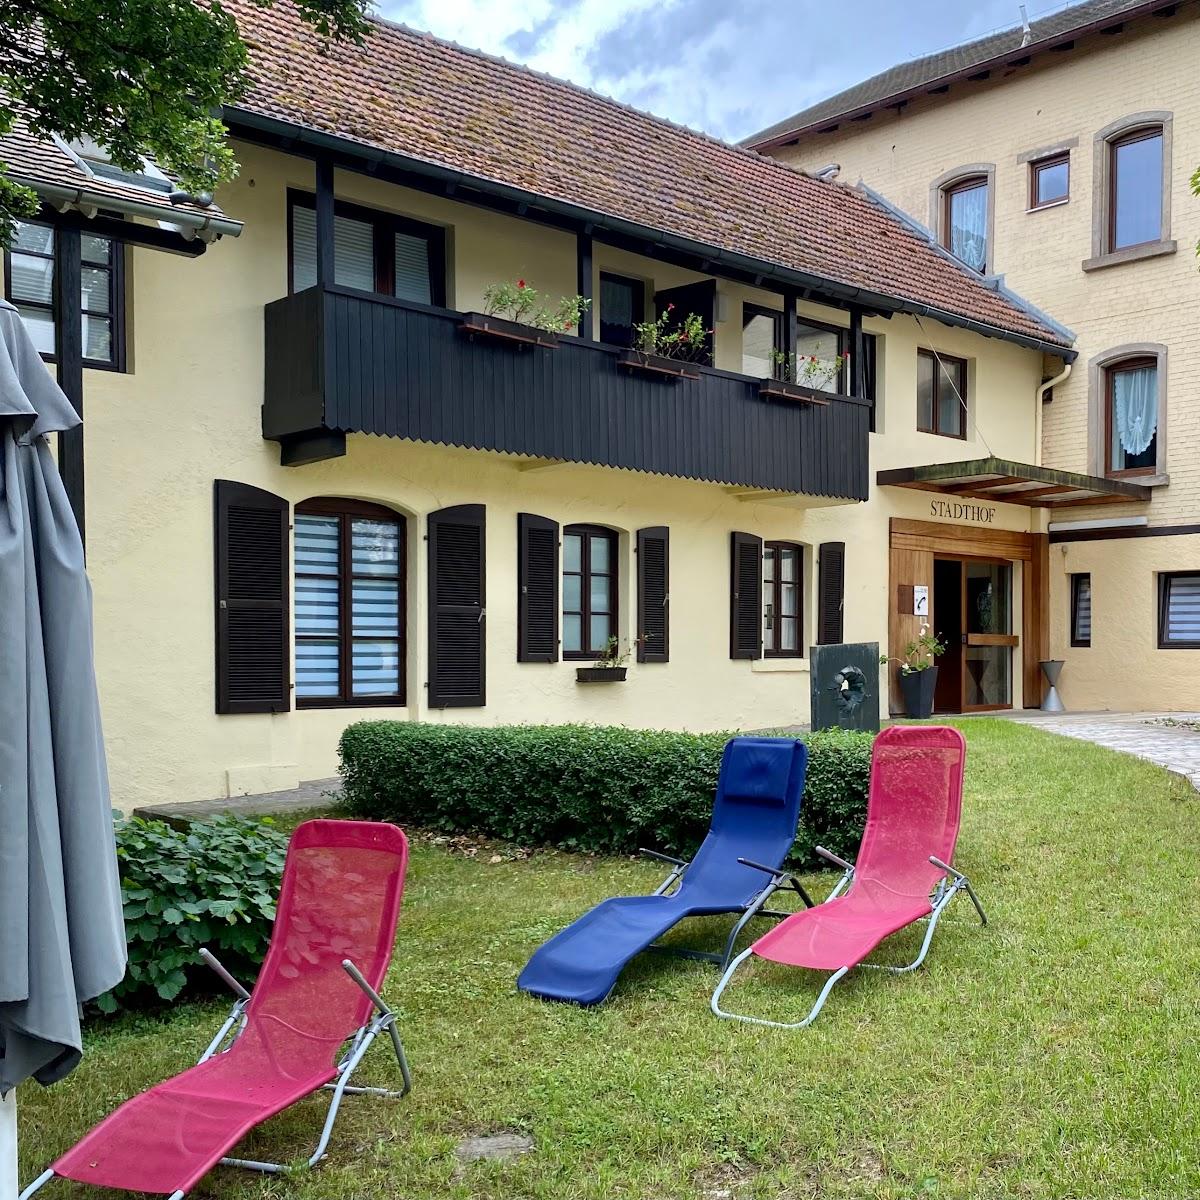 Restaurant "Hotel-Gästehaus Stadthof" in Treuchtlingen